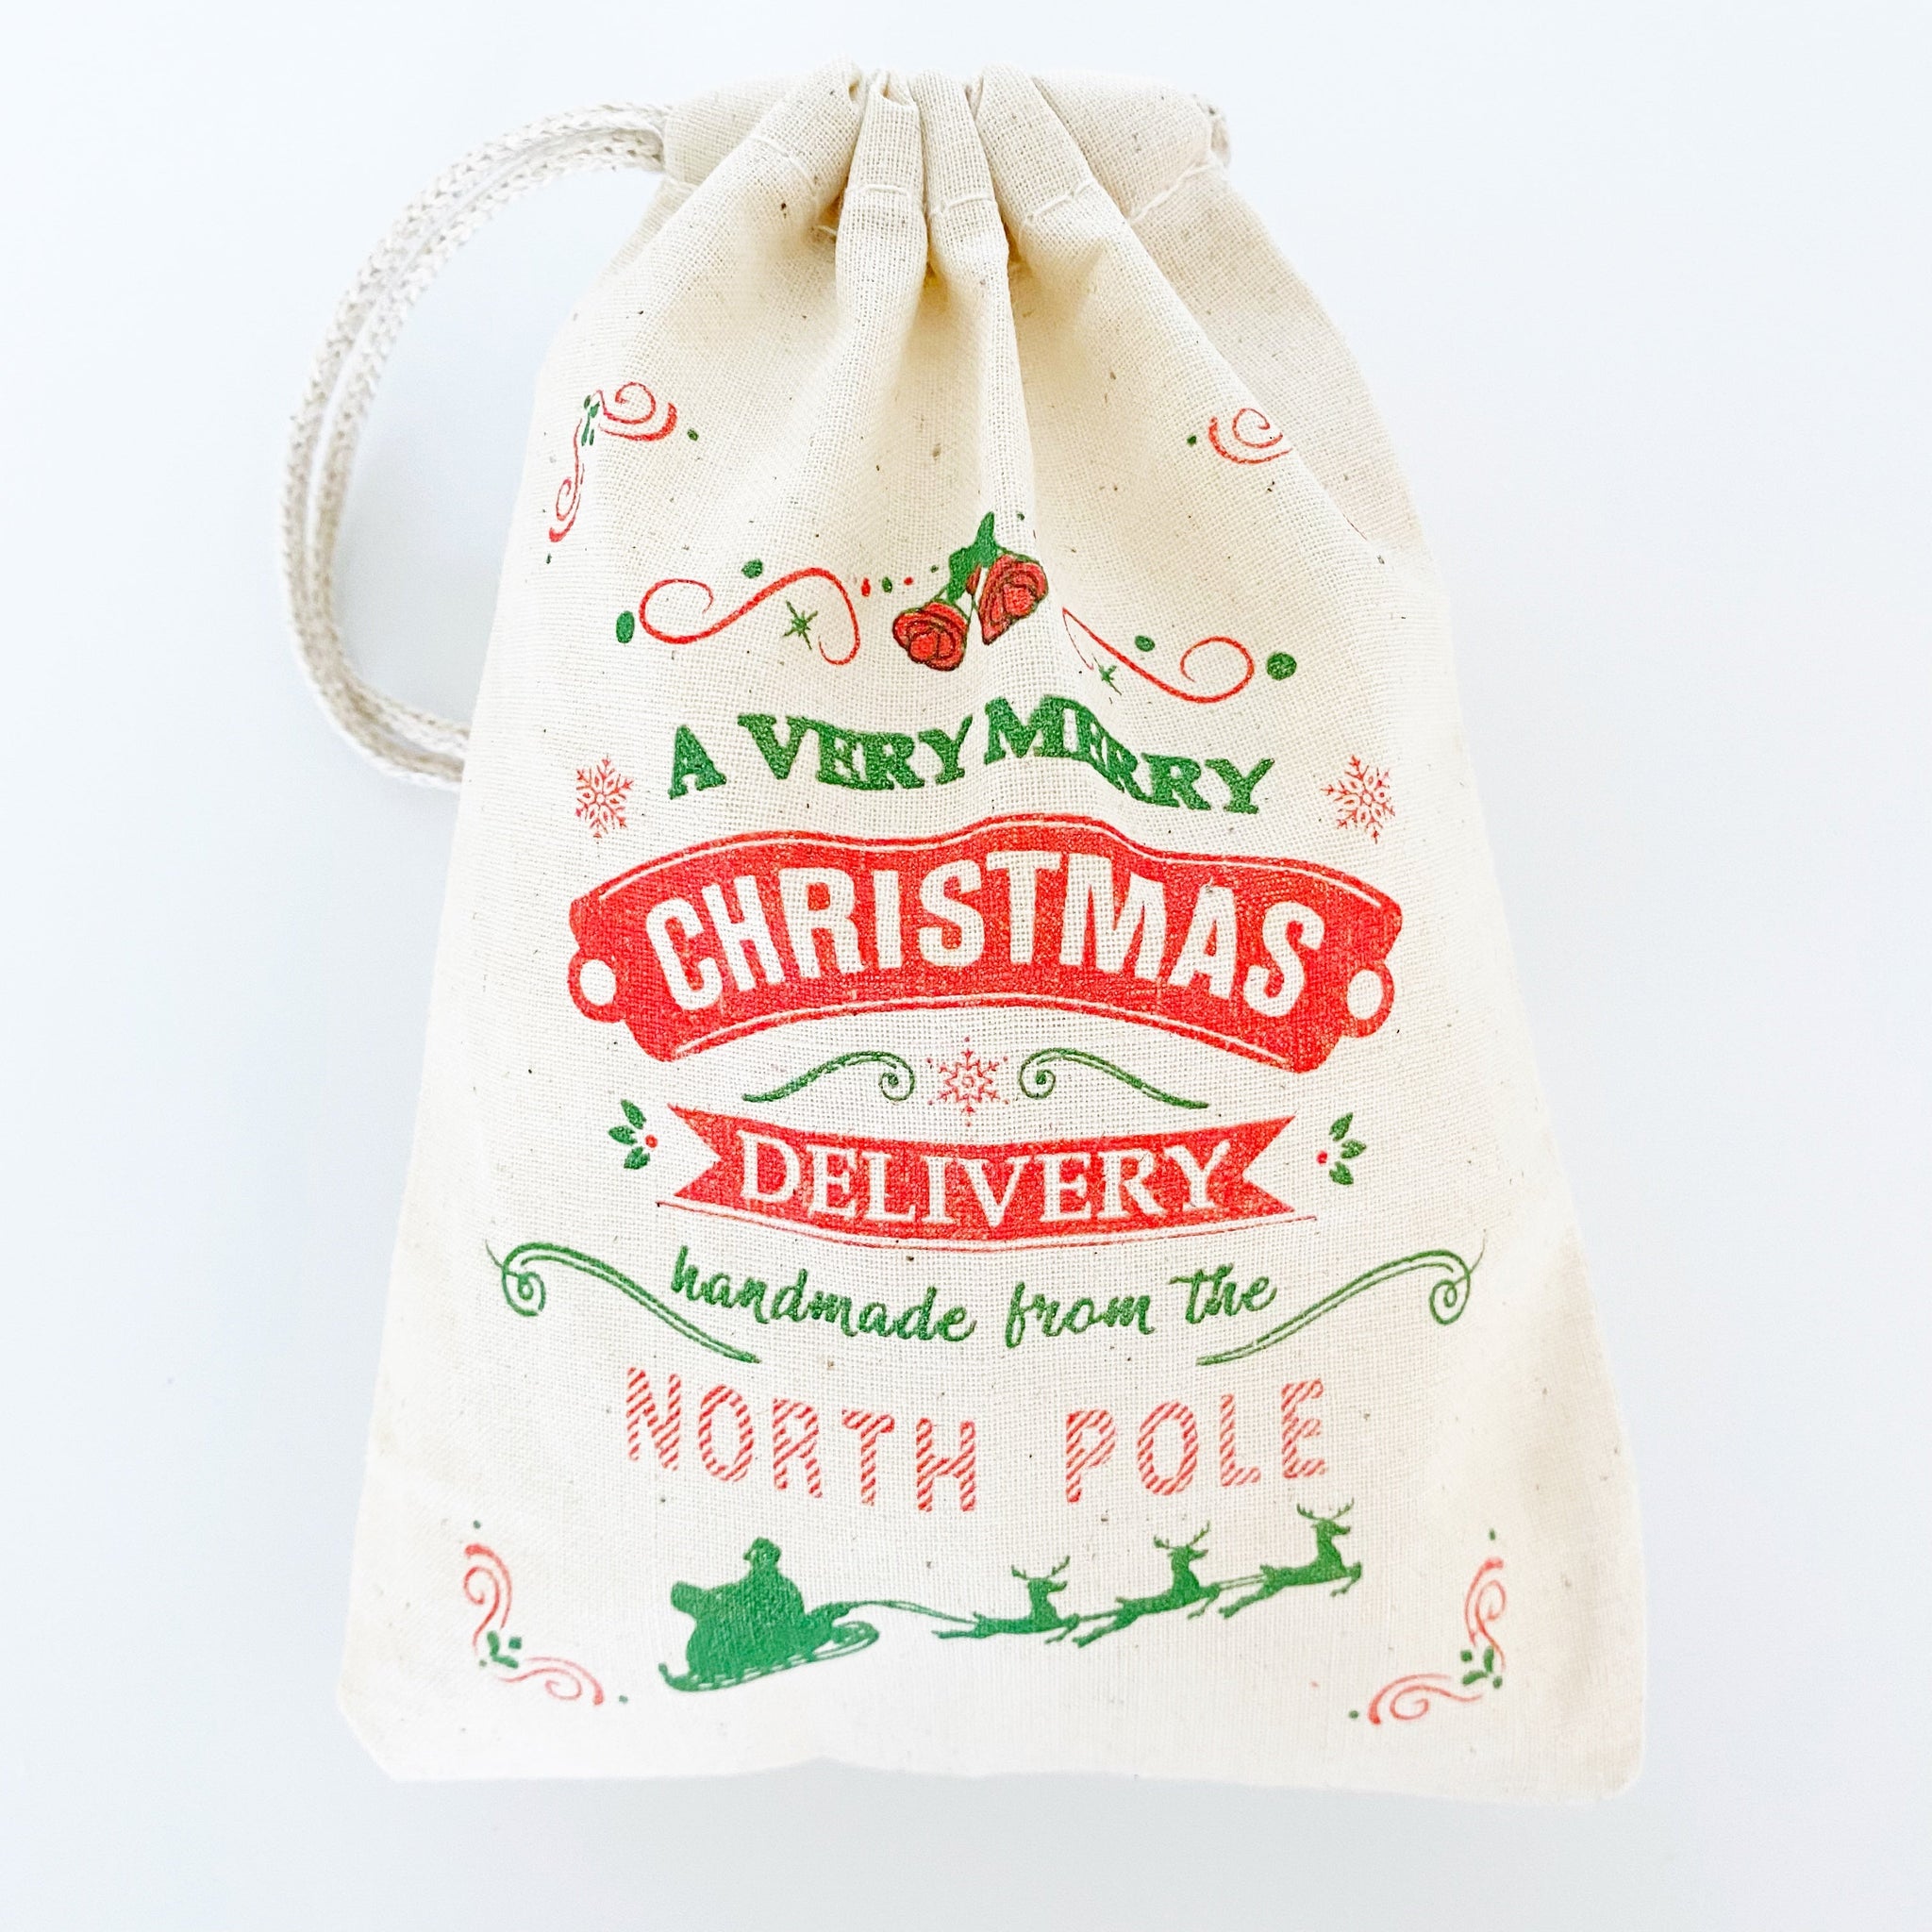 North Pole Christmas Tree Hand-printed Gift Bag 5" x 7" - set of 10